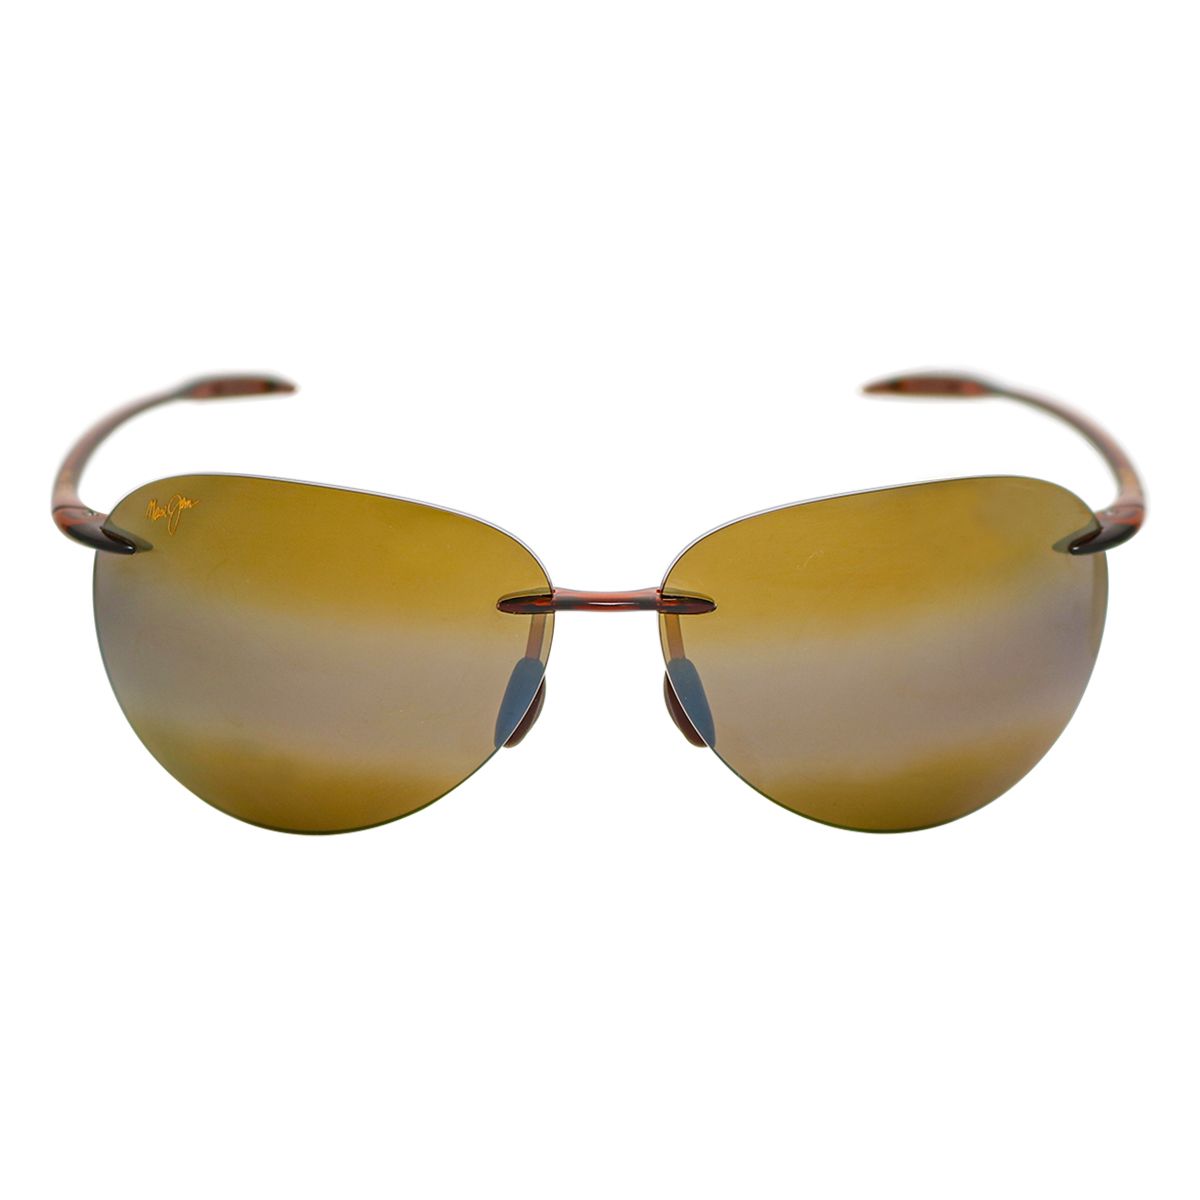 MJ421 Pilot Sunglasses 26 - size 62